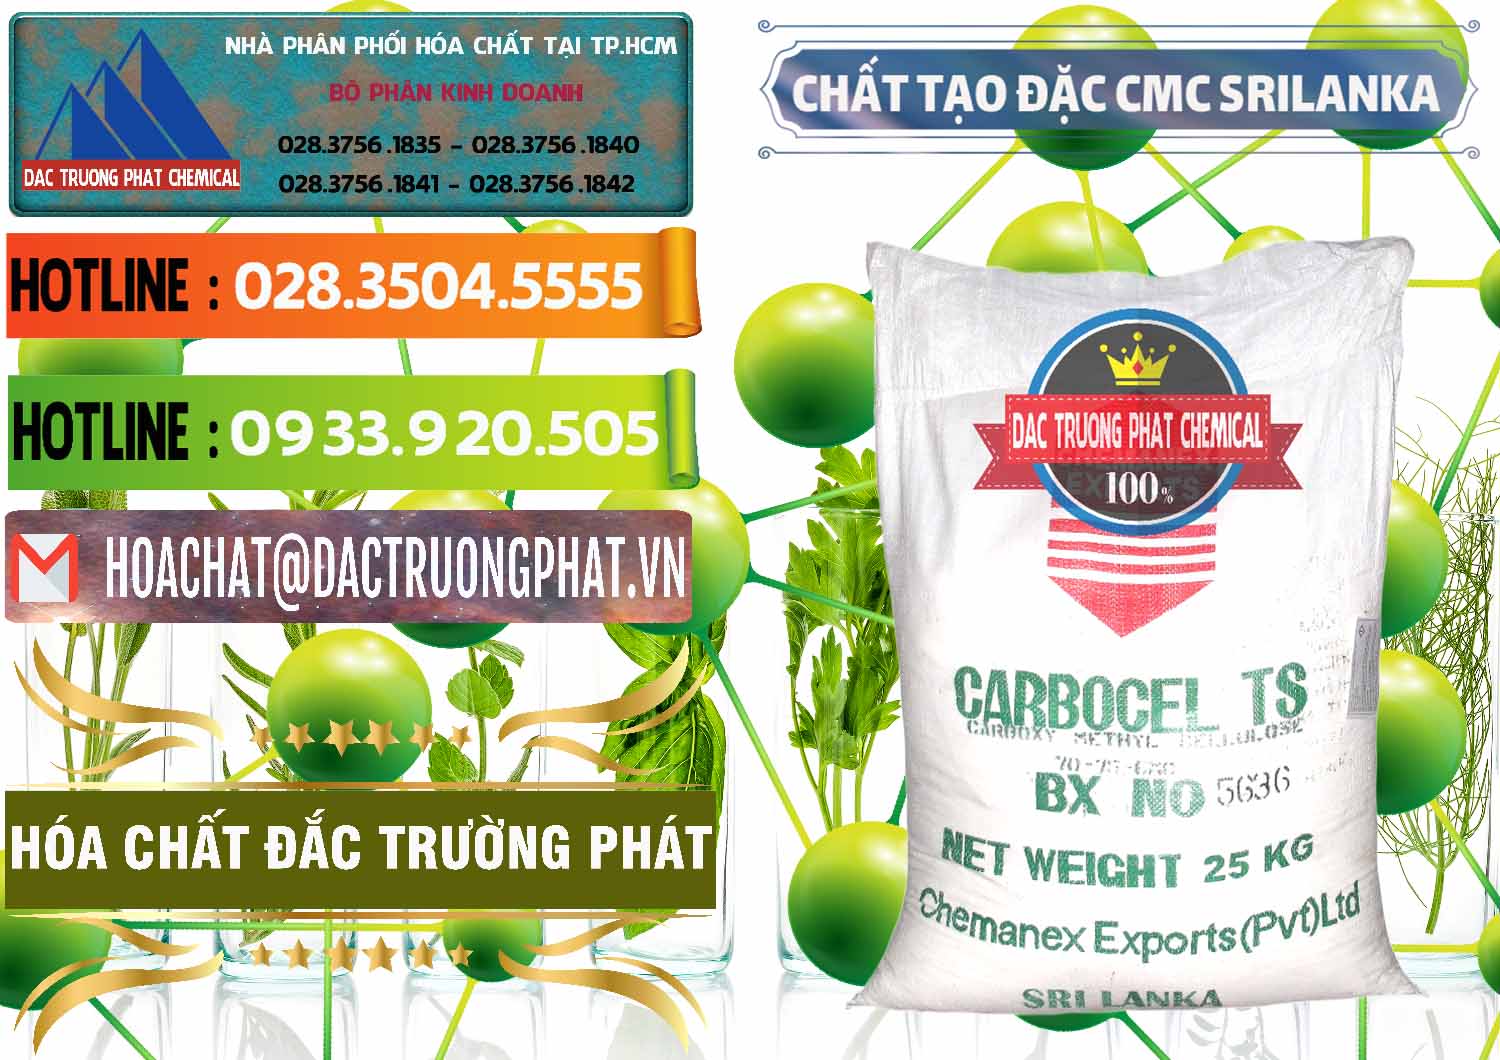 Nơi chuyên cung ứng & bán Chất Tạo Đặc CMC - Carboxyl Methyl Cellulose Srilanka - 0045 - Chuyên phân phối và bán hóa chất tại TP.HCM - cungcaphoachat.com.vn